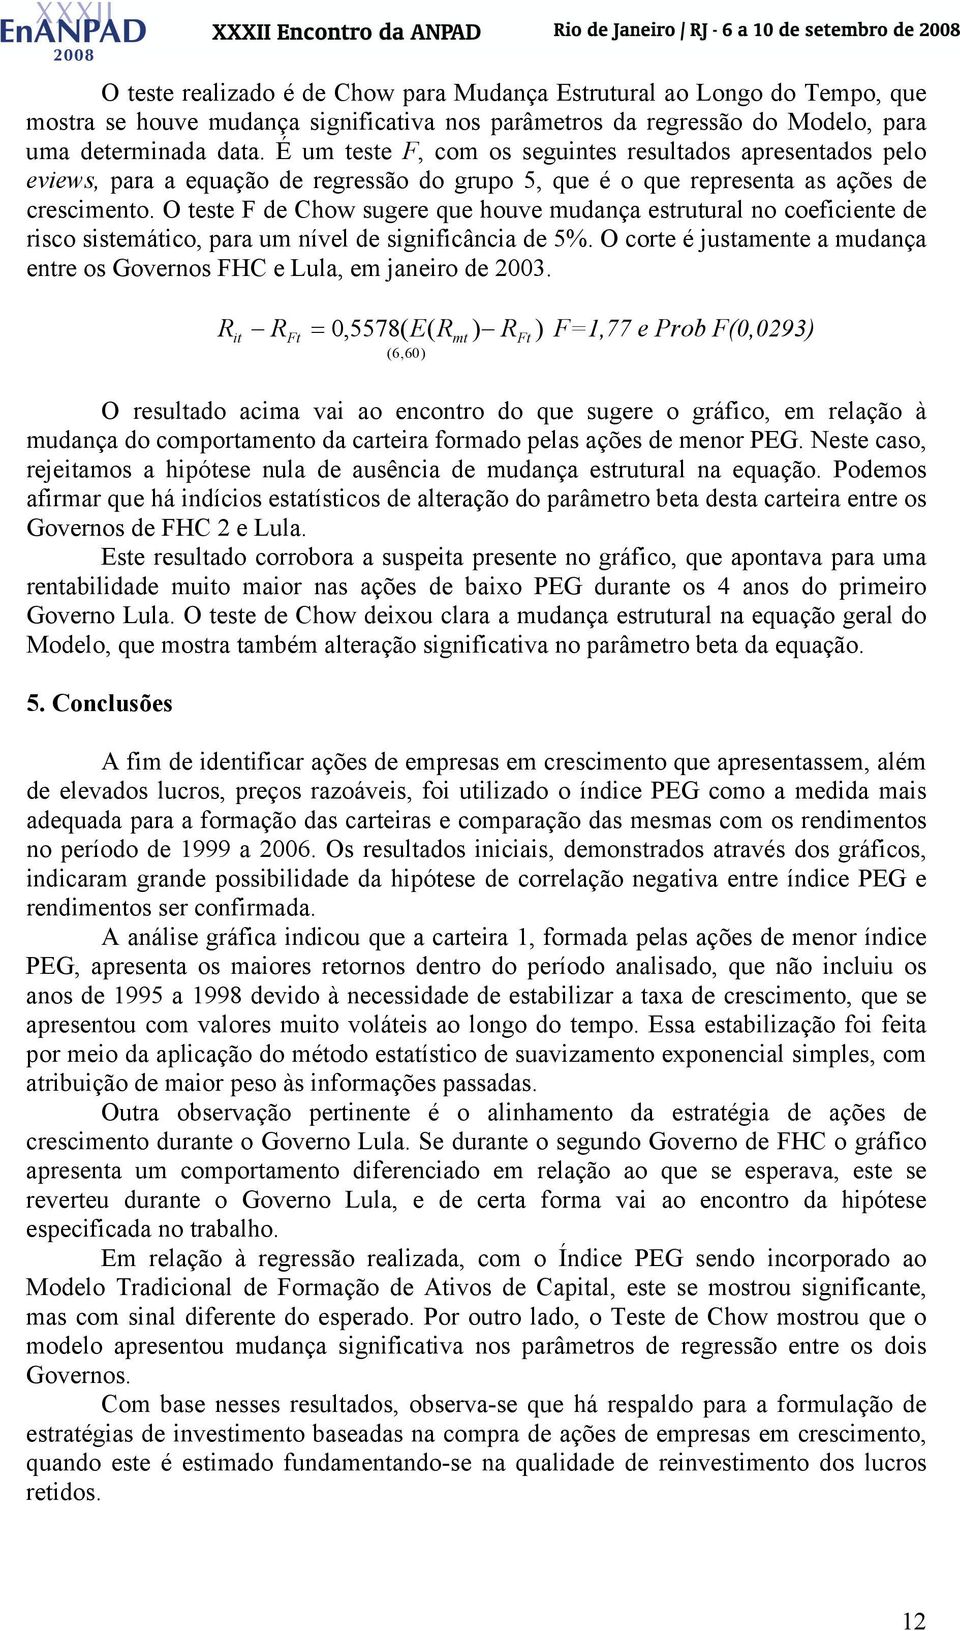 O teste F de Chow sugere que houve mudança estrutural no coefcente de rsco sstemátco, para um nível de sgnfcânca de 5%. O corte é justamente a mudança entre os Governos FHC e Lula, em janero de 2003.